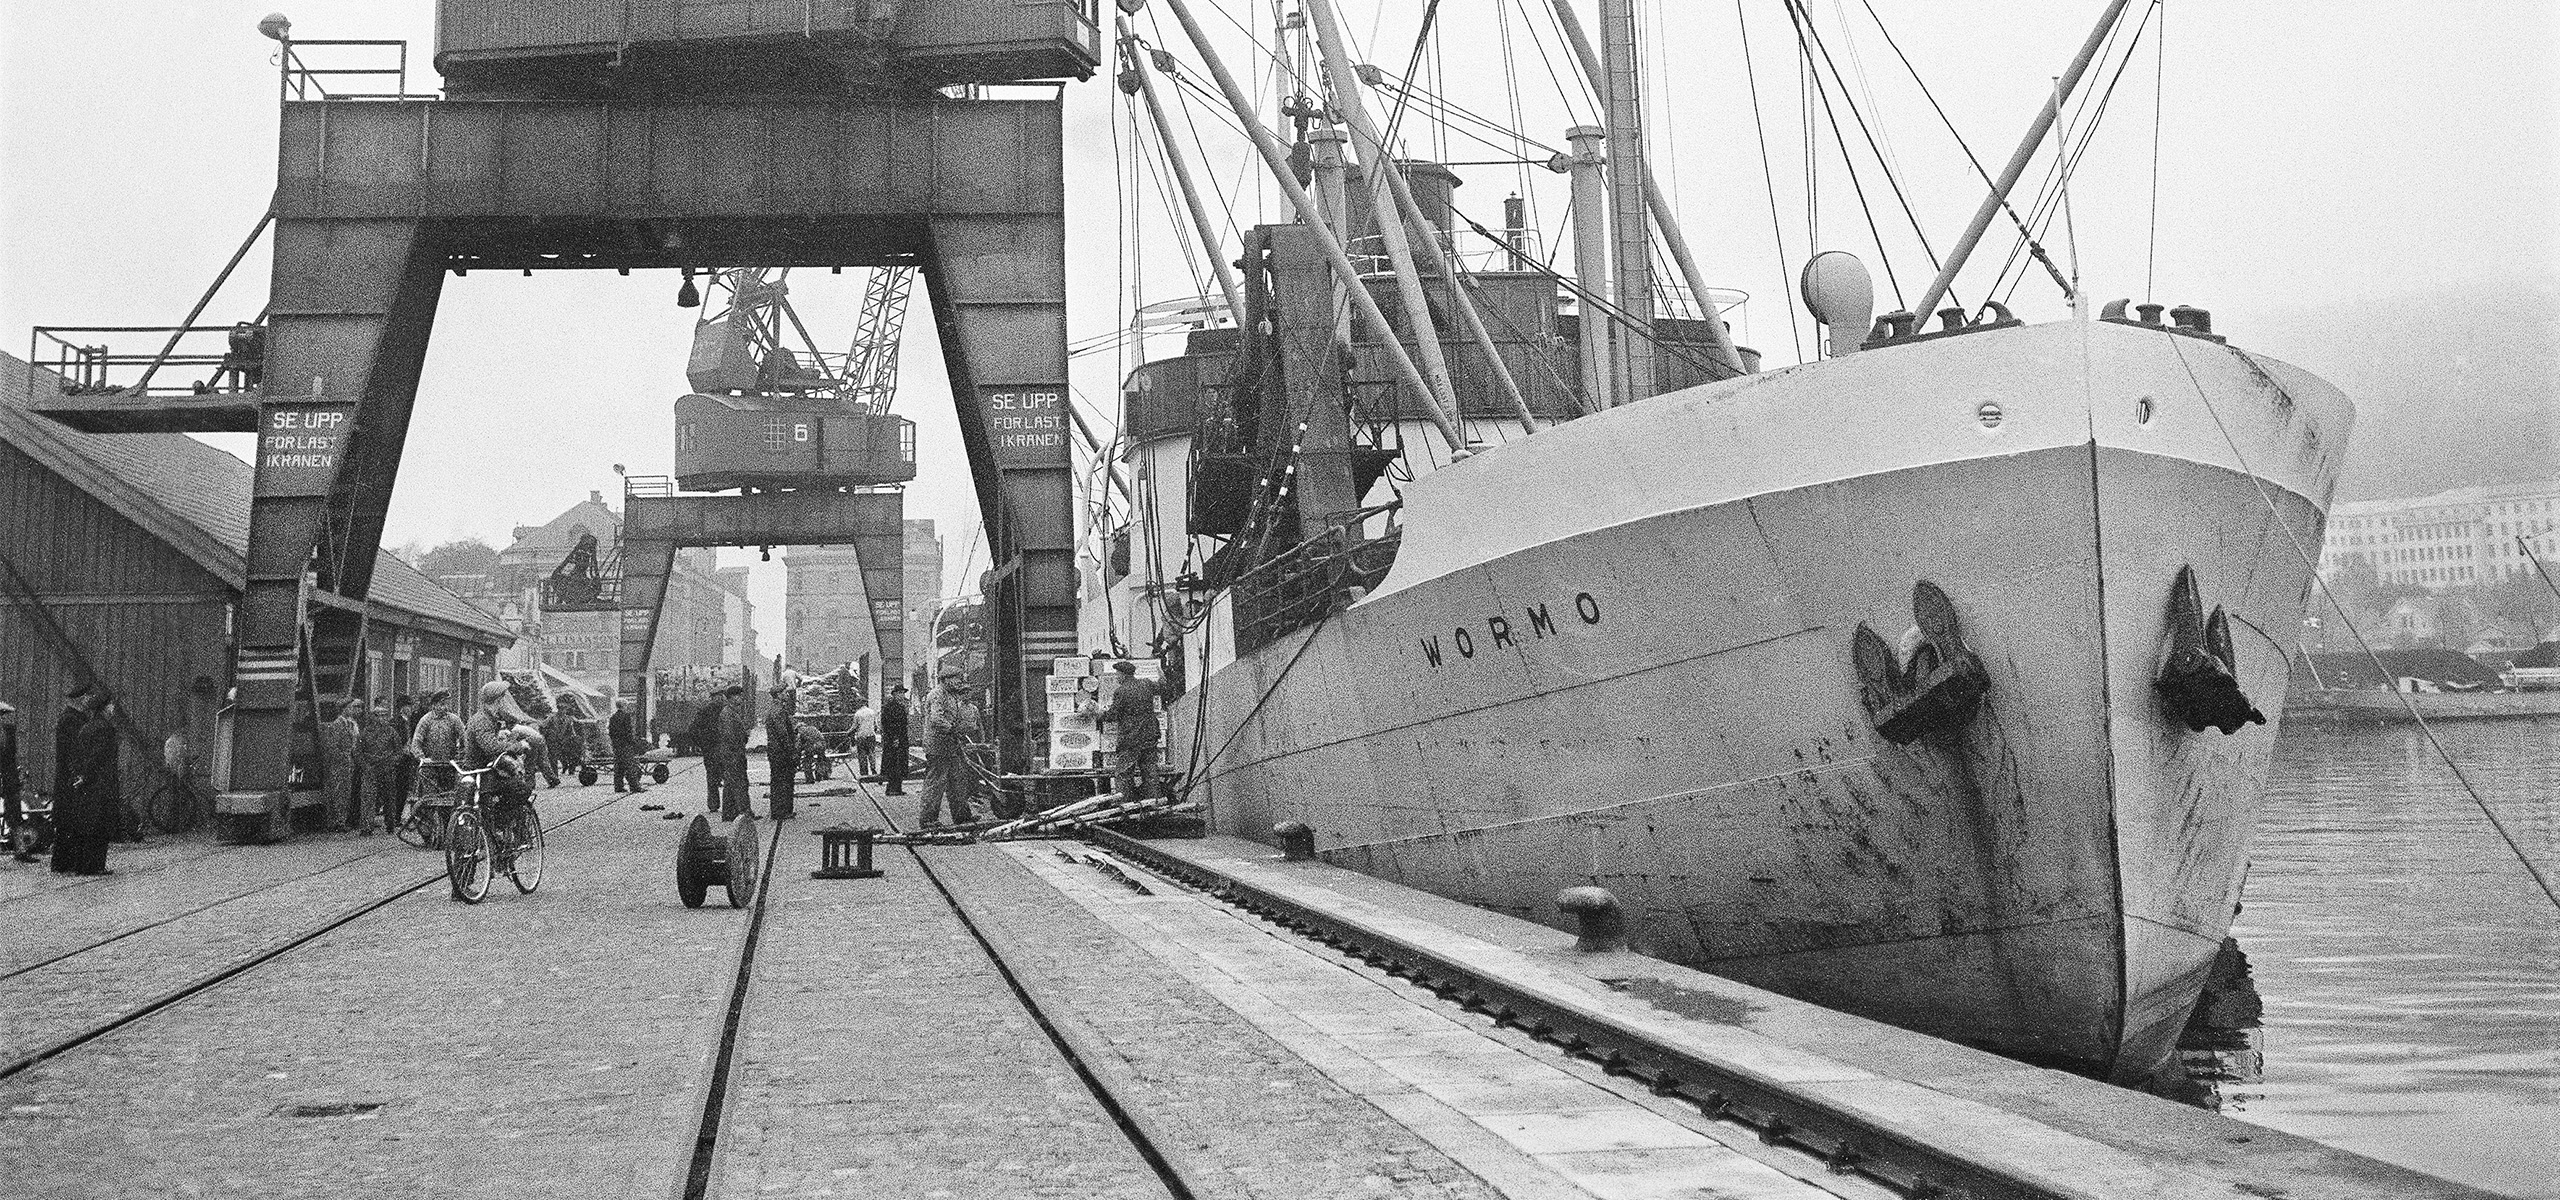 Wormo, ett 11 tons fartyg i hamnen. Fotografering 1945-1955 uppskattat.